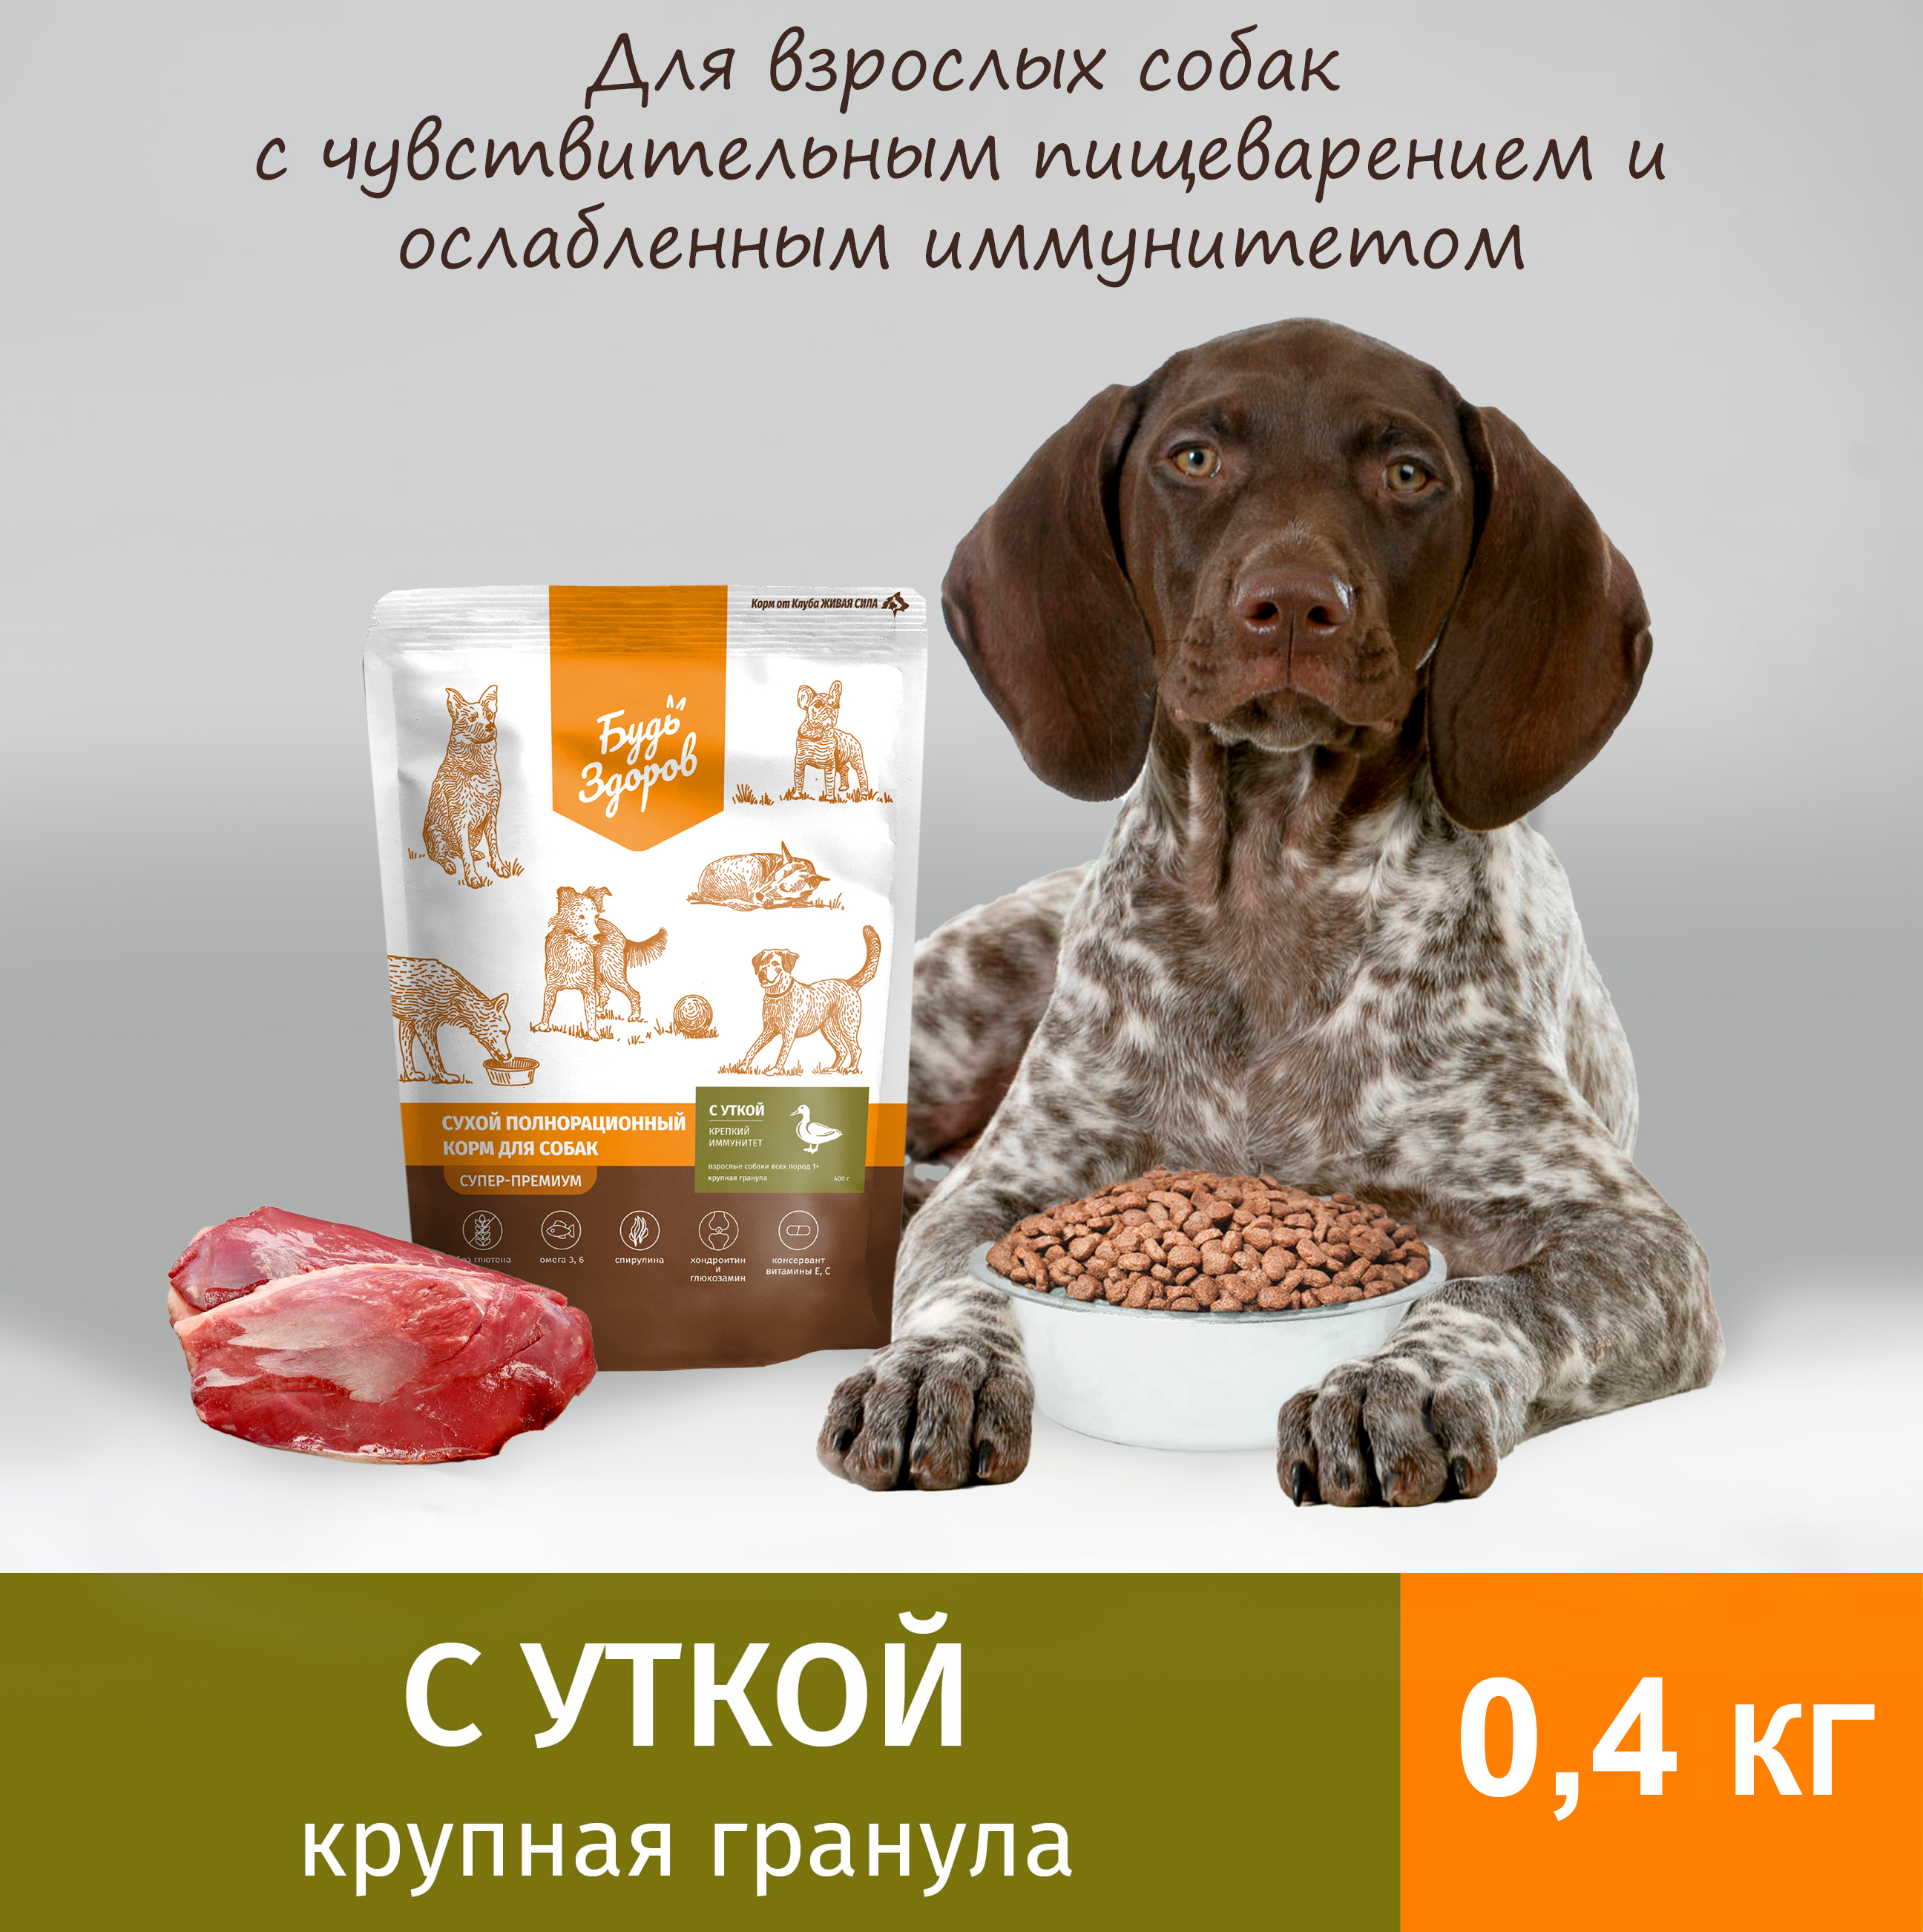 Сухой корм для собак Будь Здоров Живая Сила, крупная гранула, с уткой, 0,4 кг